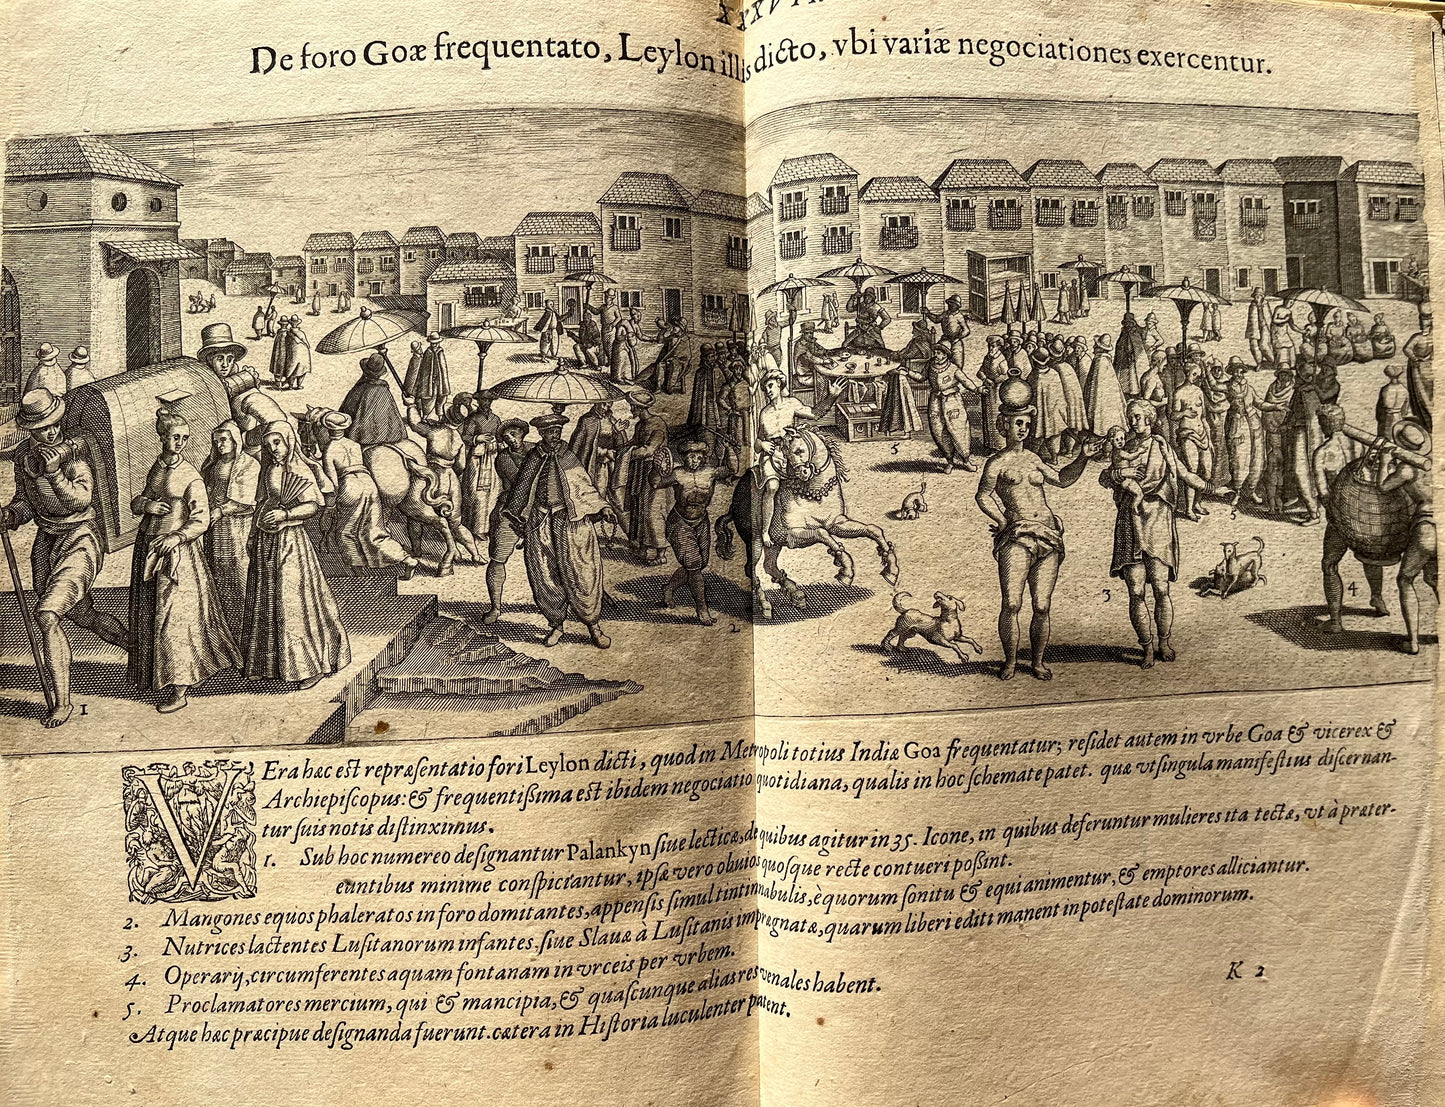 Linschoten - Part 2 De Bry’s Petits Voyages - 1599